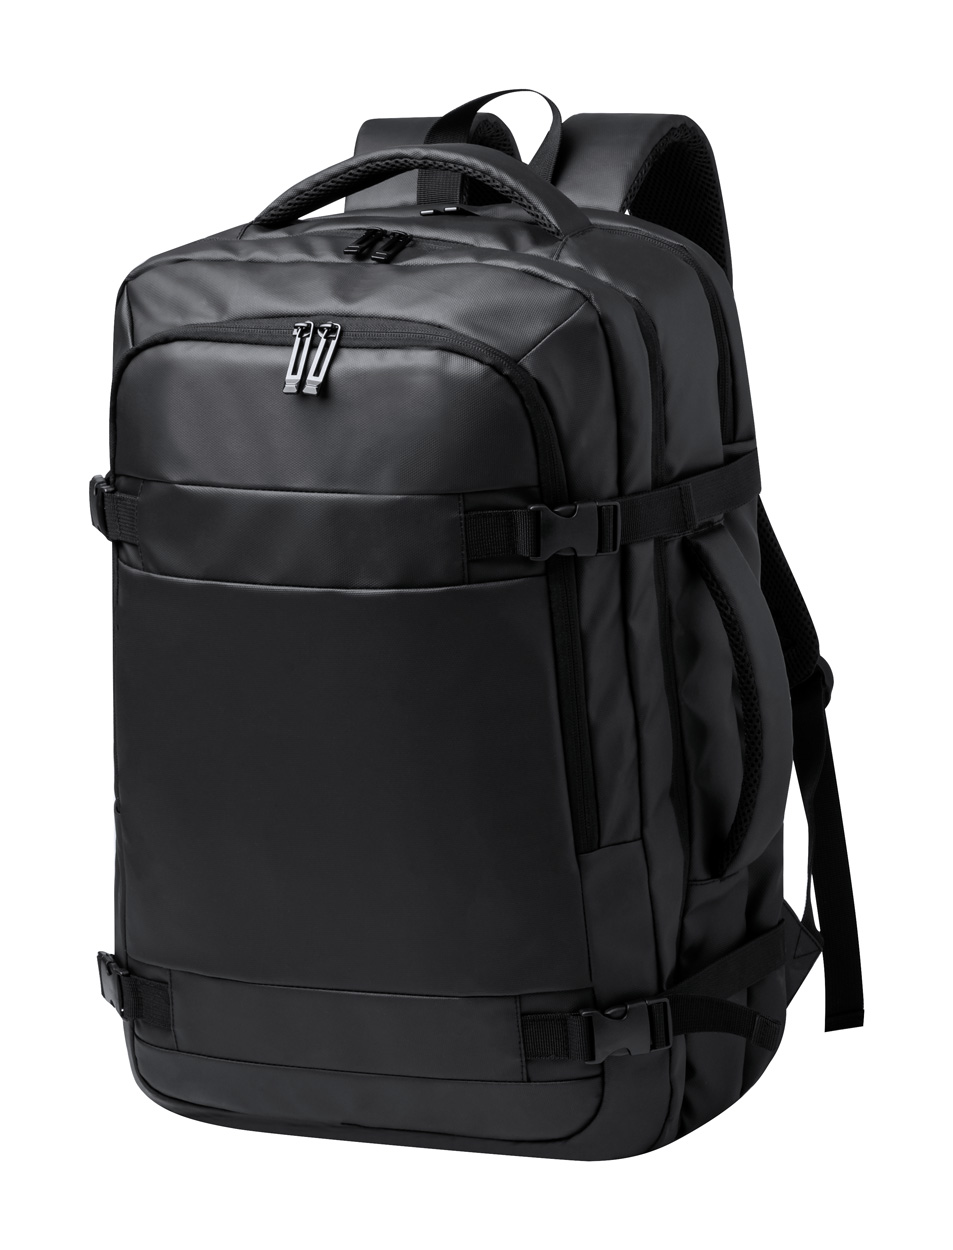 Tanen backpack Black